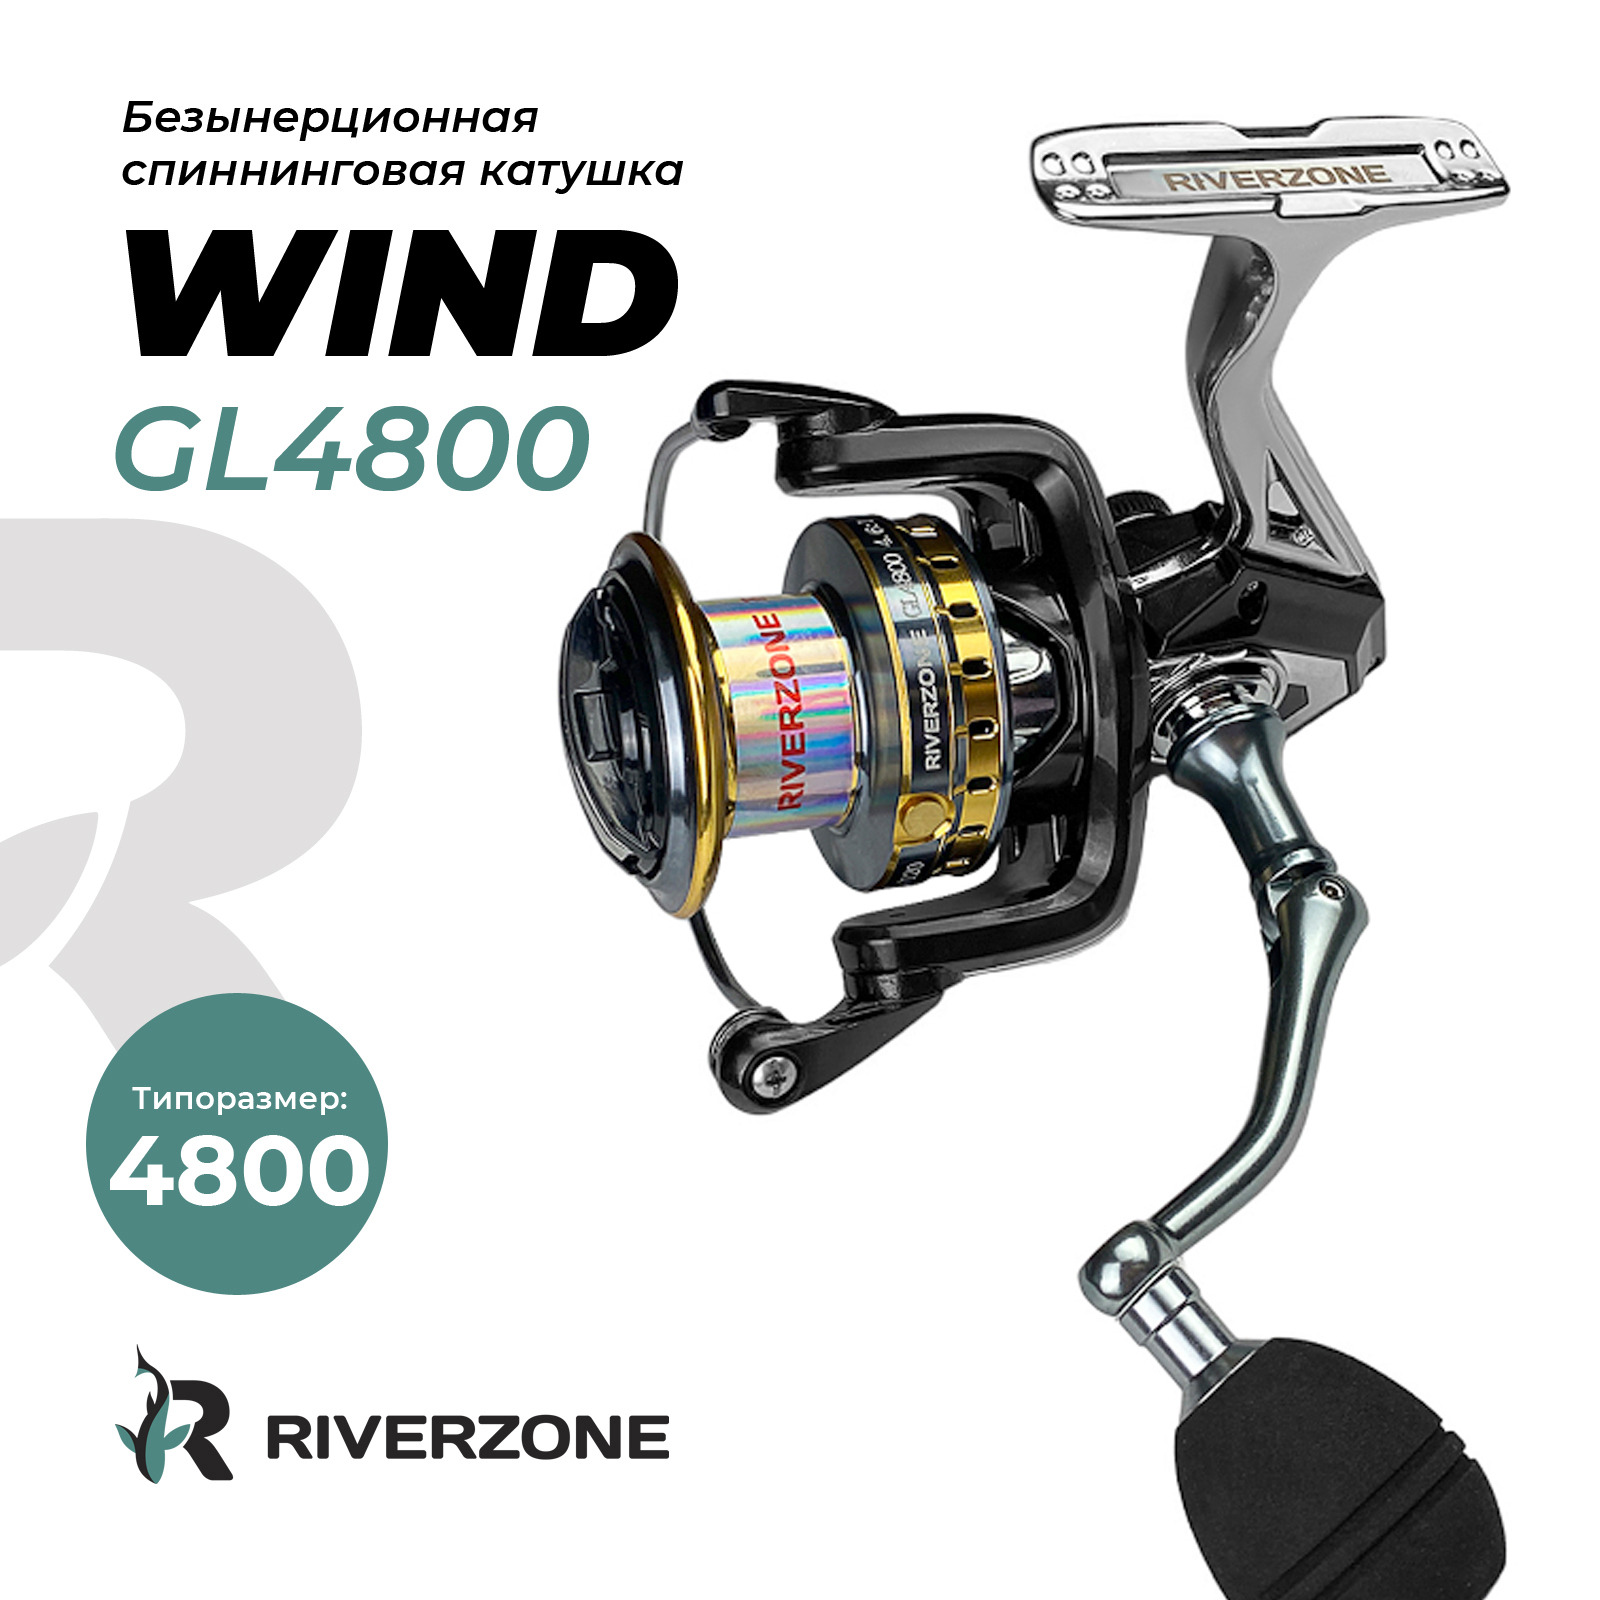 Катушка Riverzone Wind GL4800 - фото 1